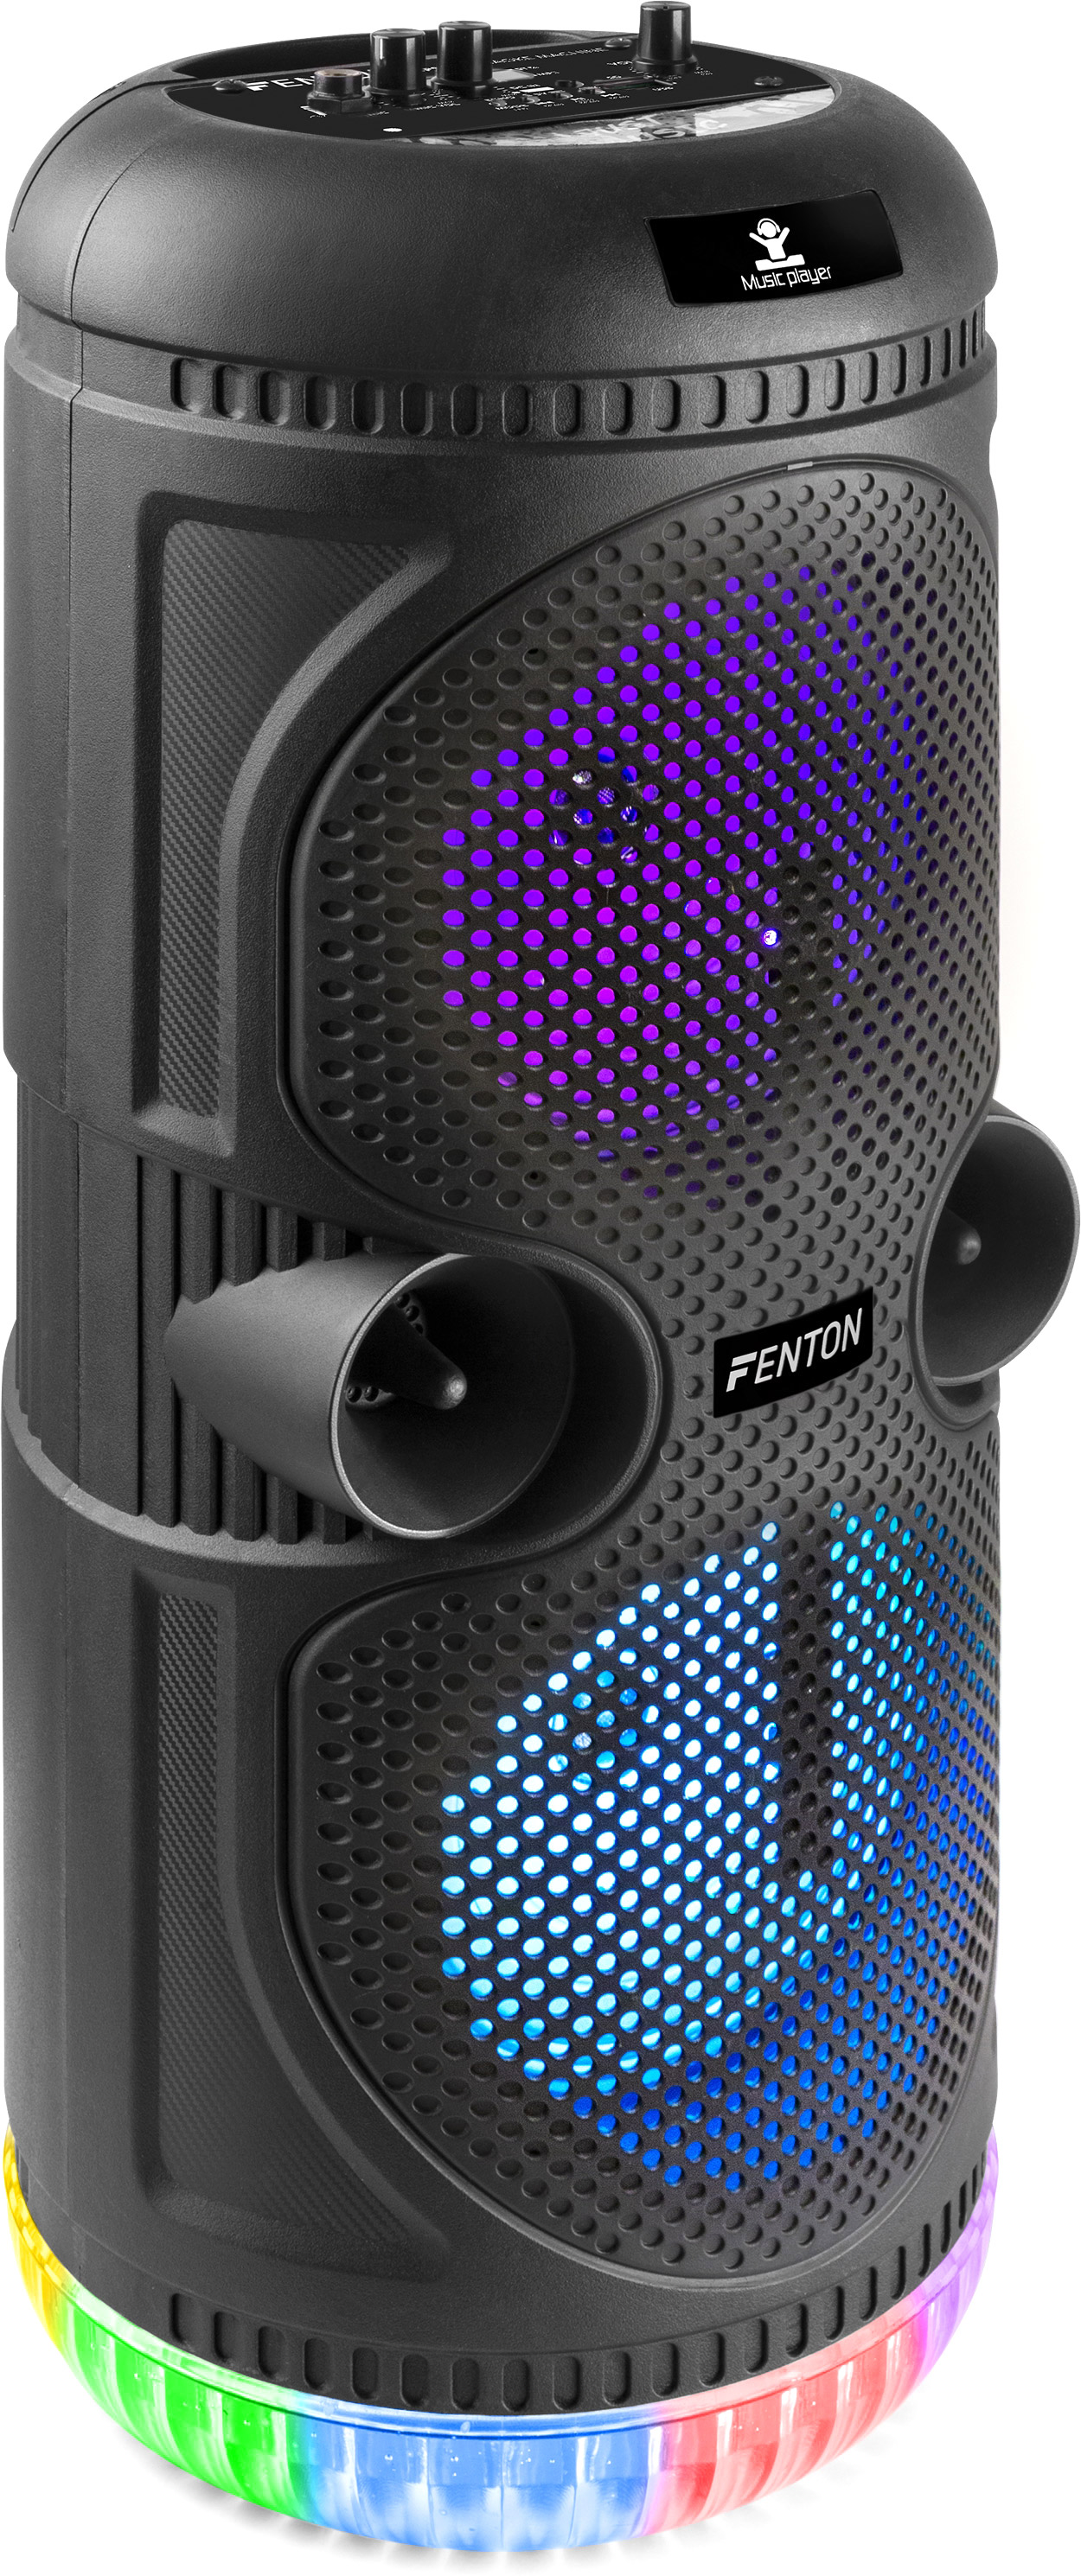 Fenton SPS75 Karaoke Machine with lightshow - cheap at LTT